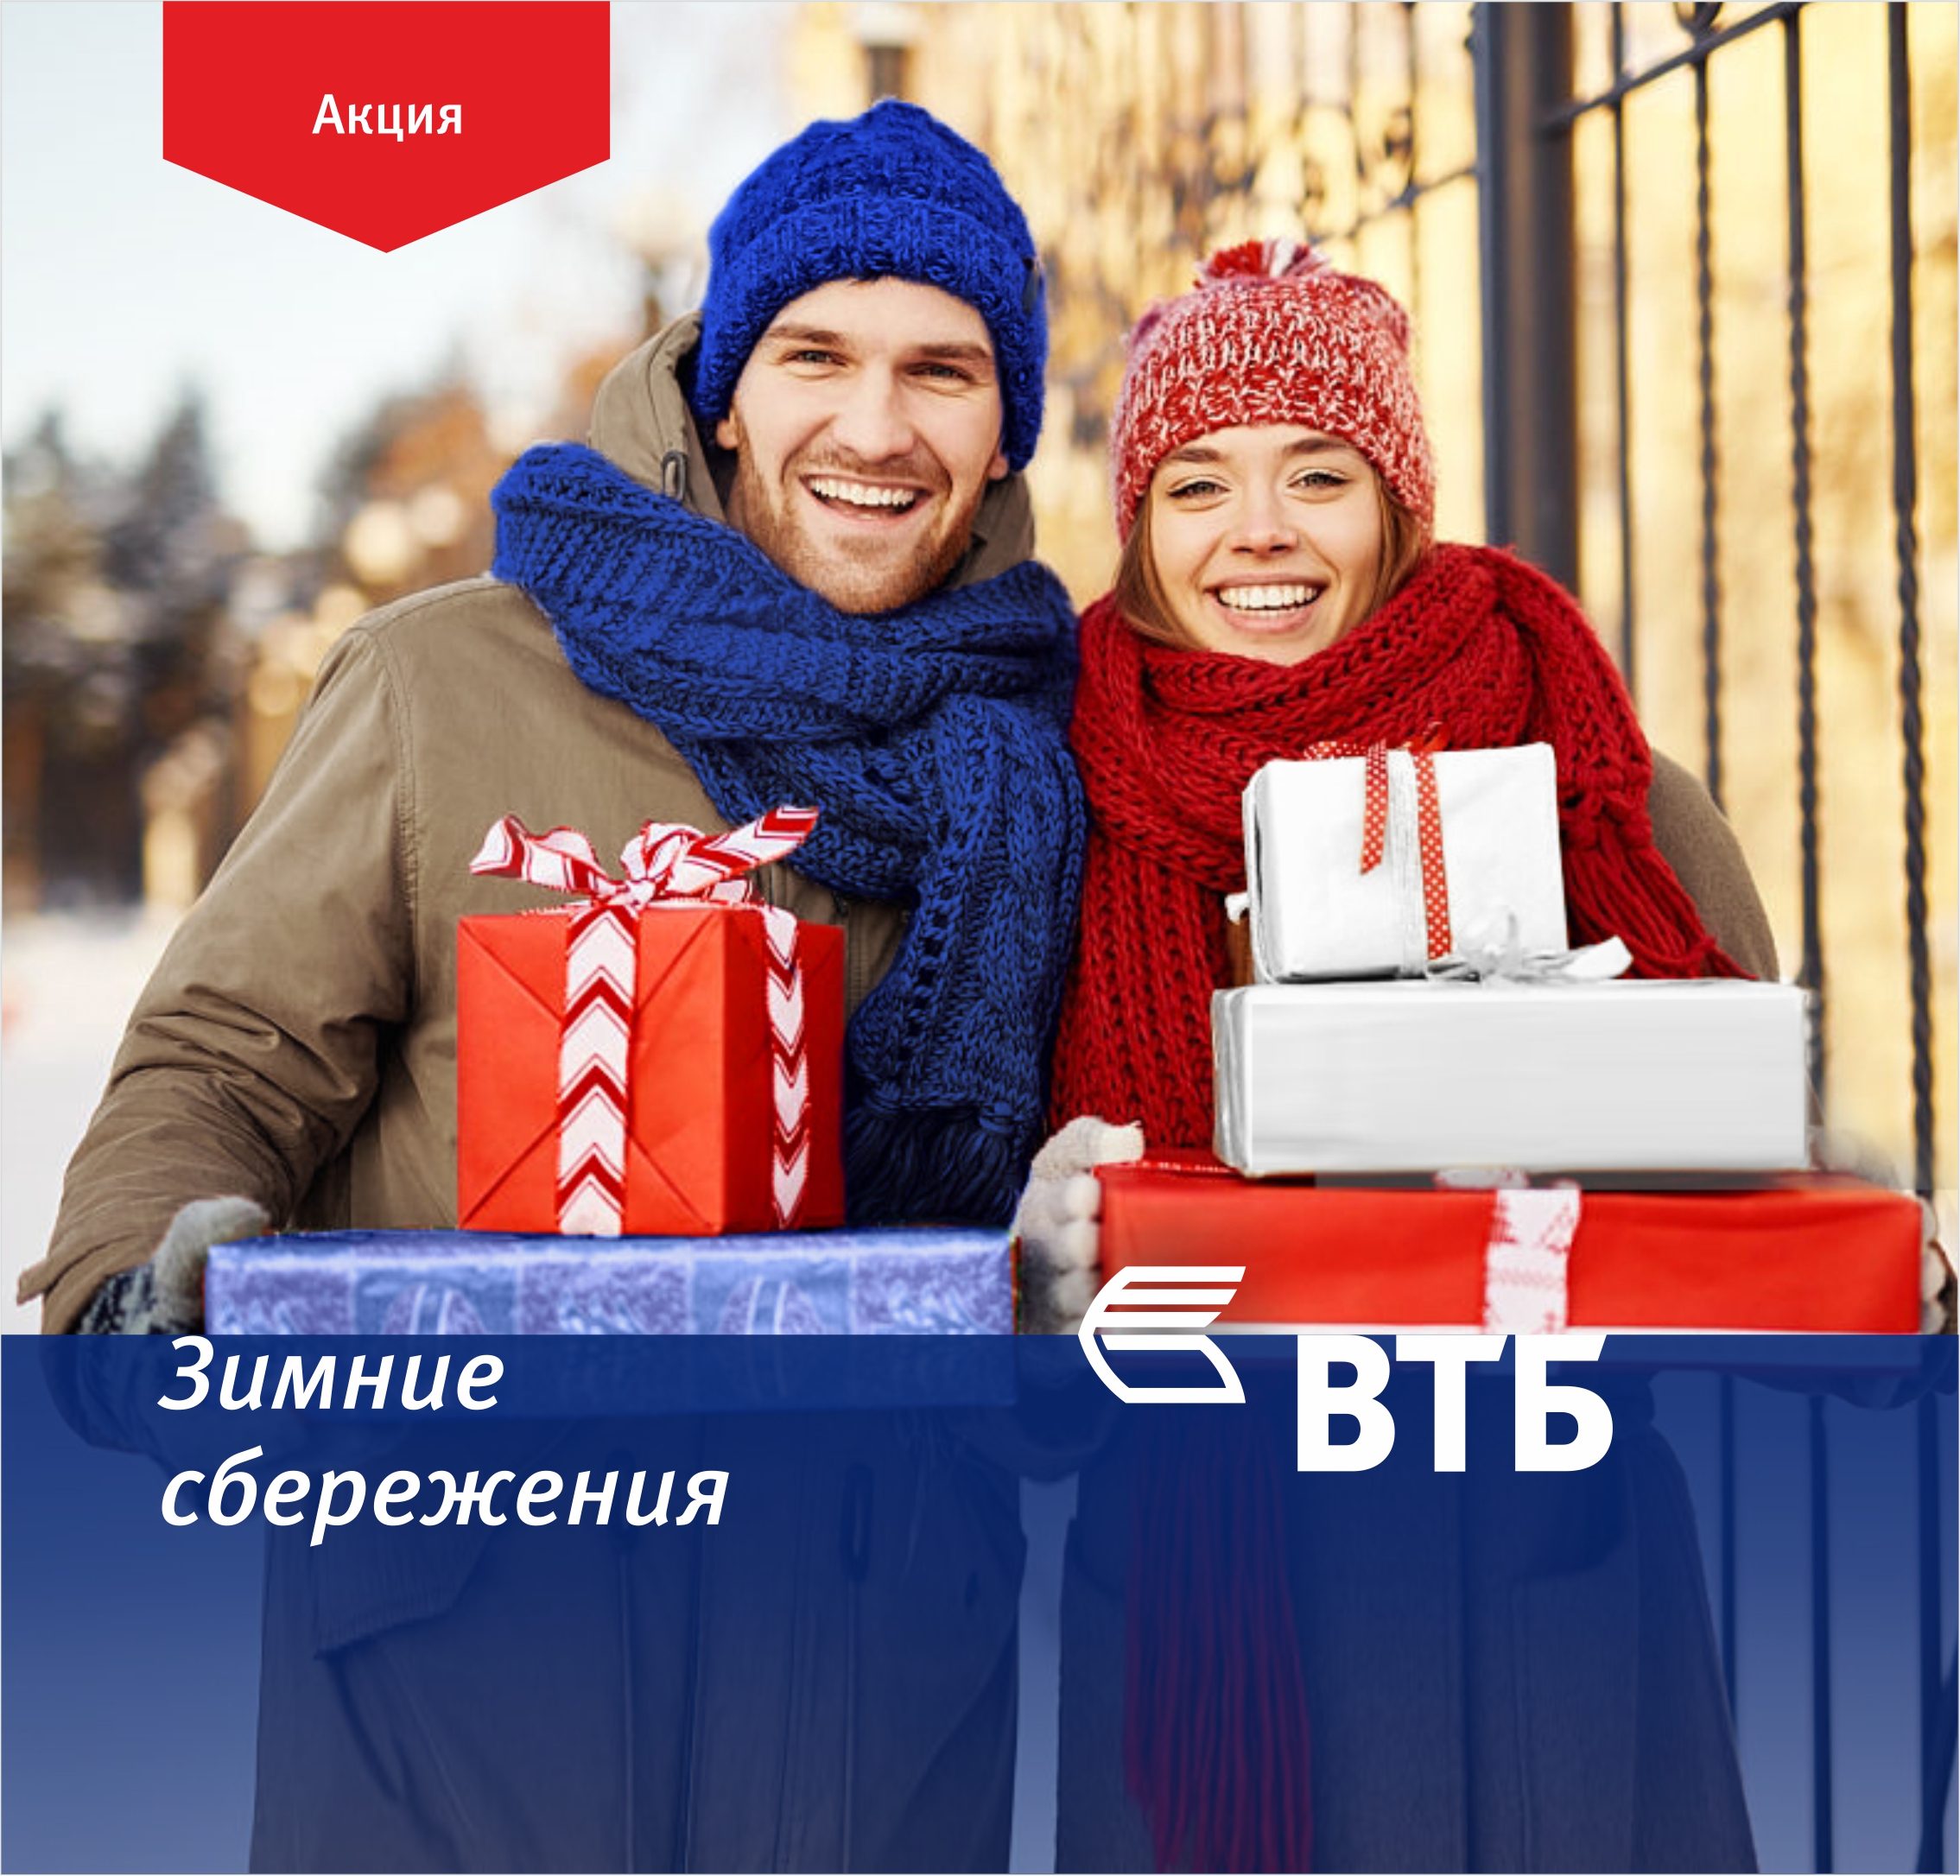 ՎՏԲ-Հայաստան Բանկը բարձր տոկոսադրույքներով ավանդների համար գործարկում է «Ձմեռային խնայողություններ» ակցիան